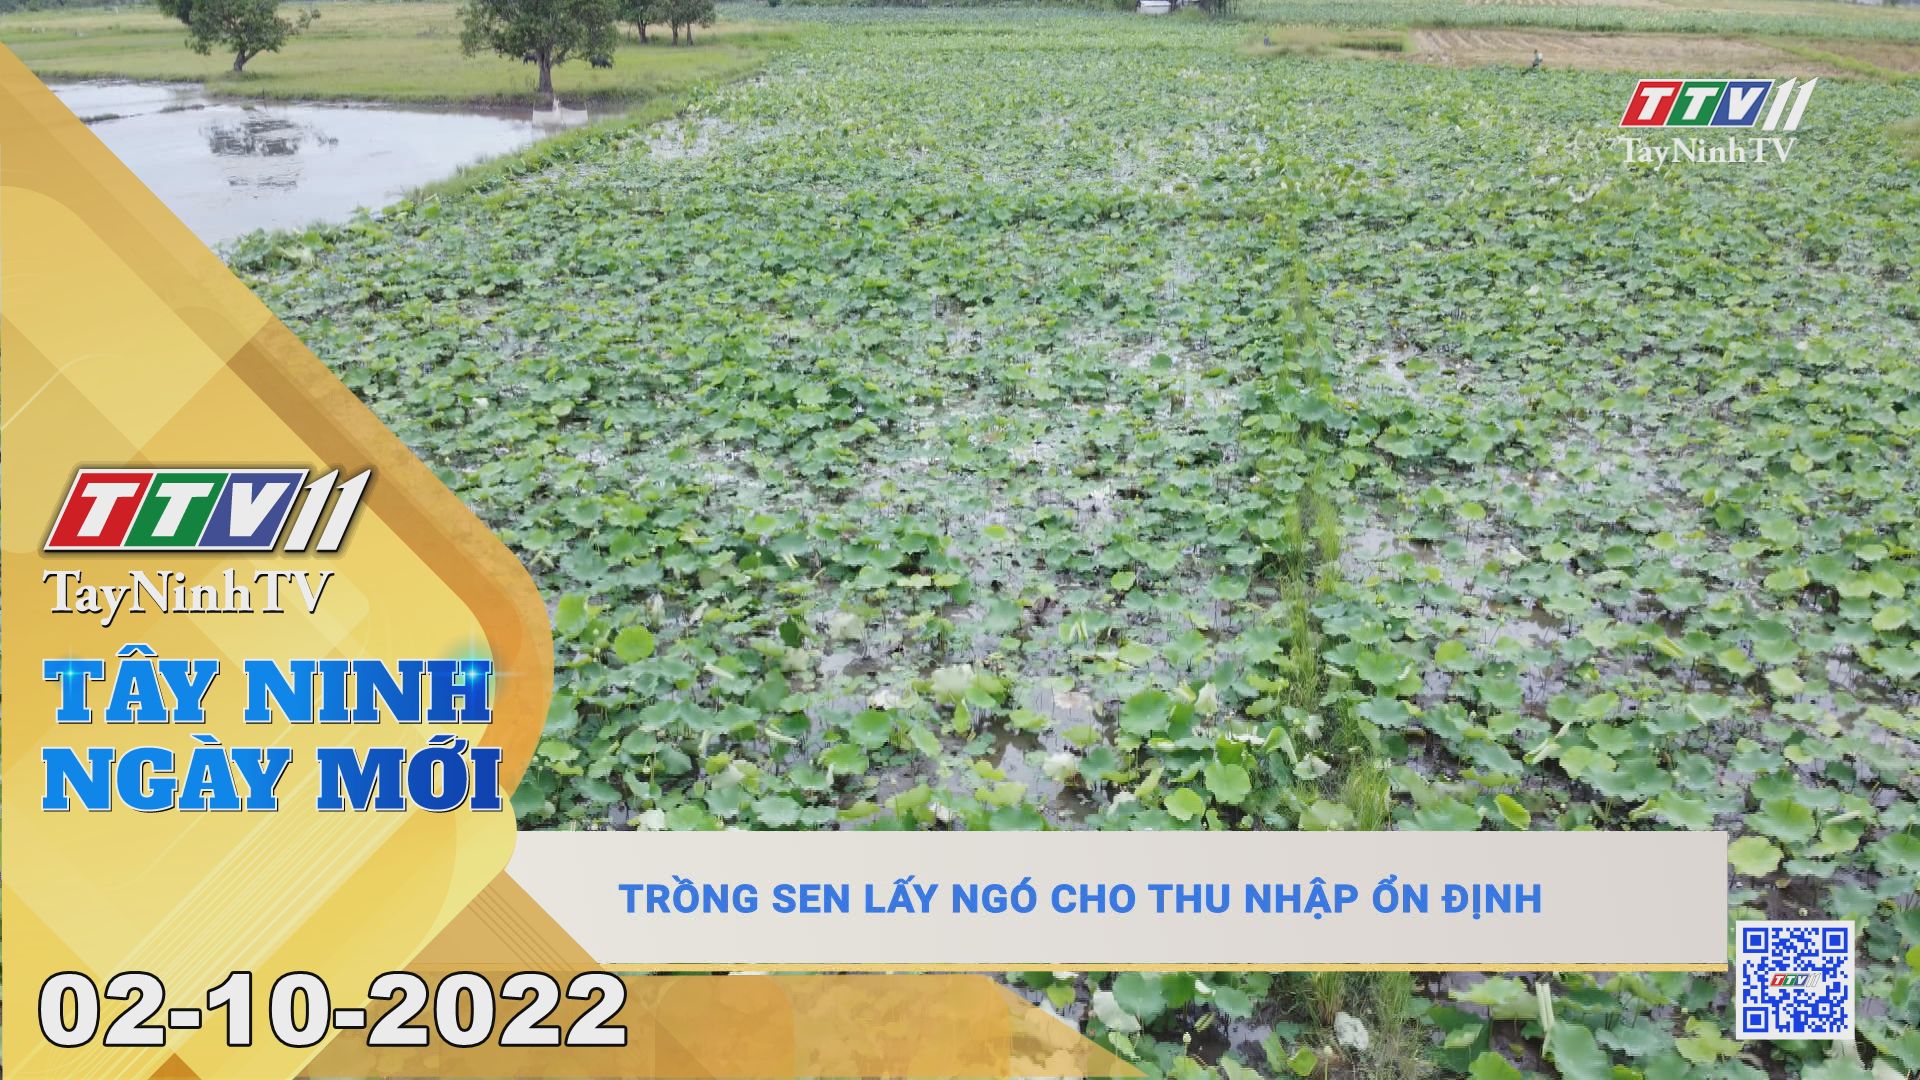 Tây Ninh ngày mới 02-10-2022 | Tin tức hôm nay | TayNinhTV